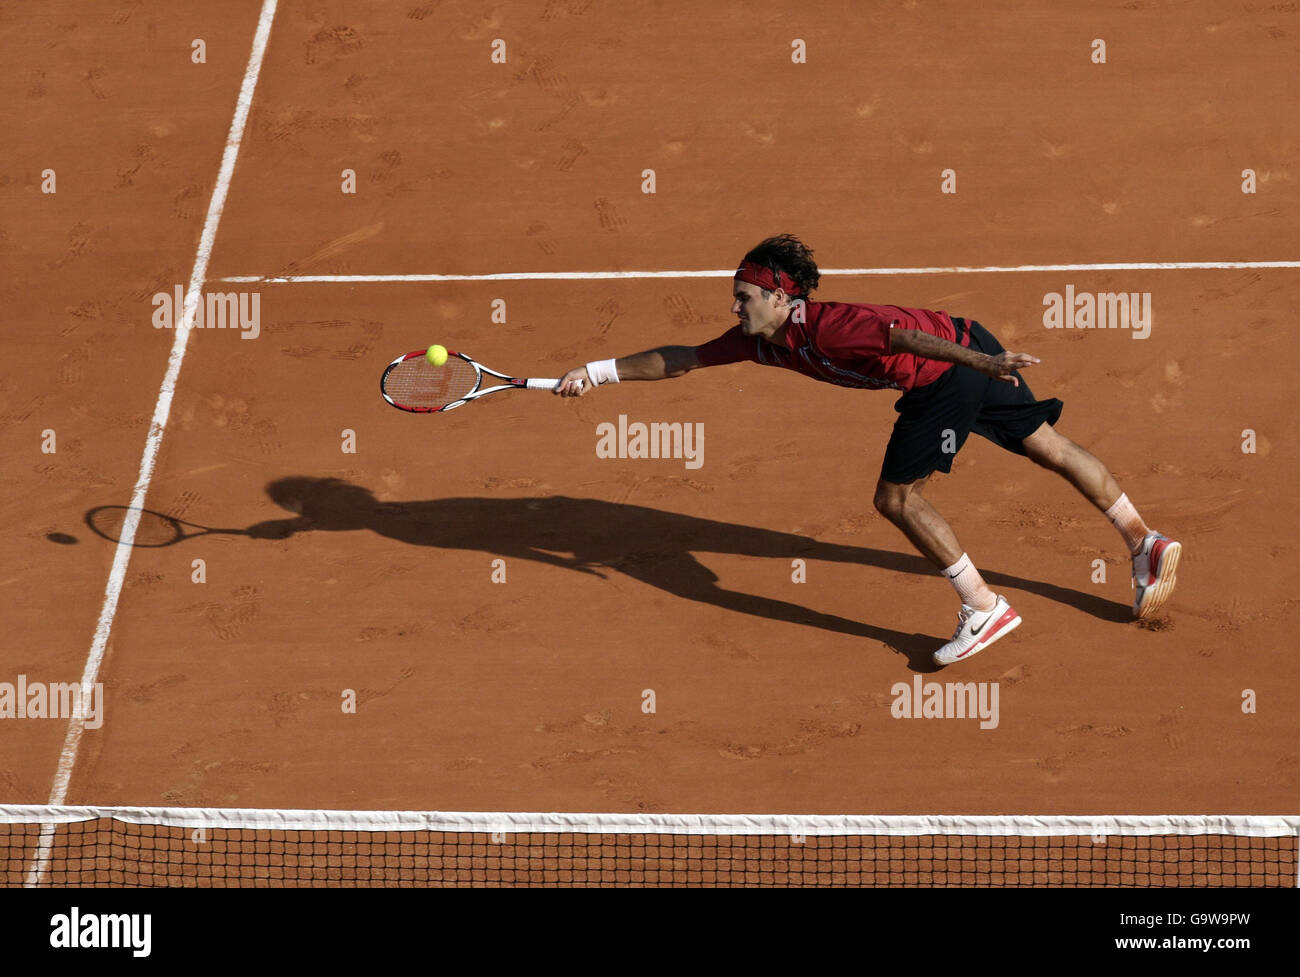 Roger Federer en acción contra Andreas Seppi durante la serie Masters, primera ronda de partido en Monte-Carlo, Mónaco. Foto de stock